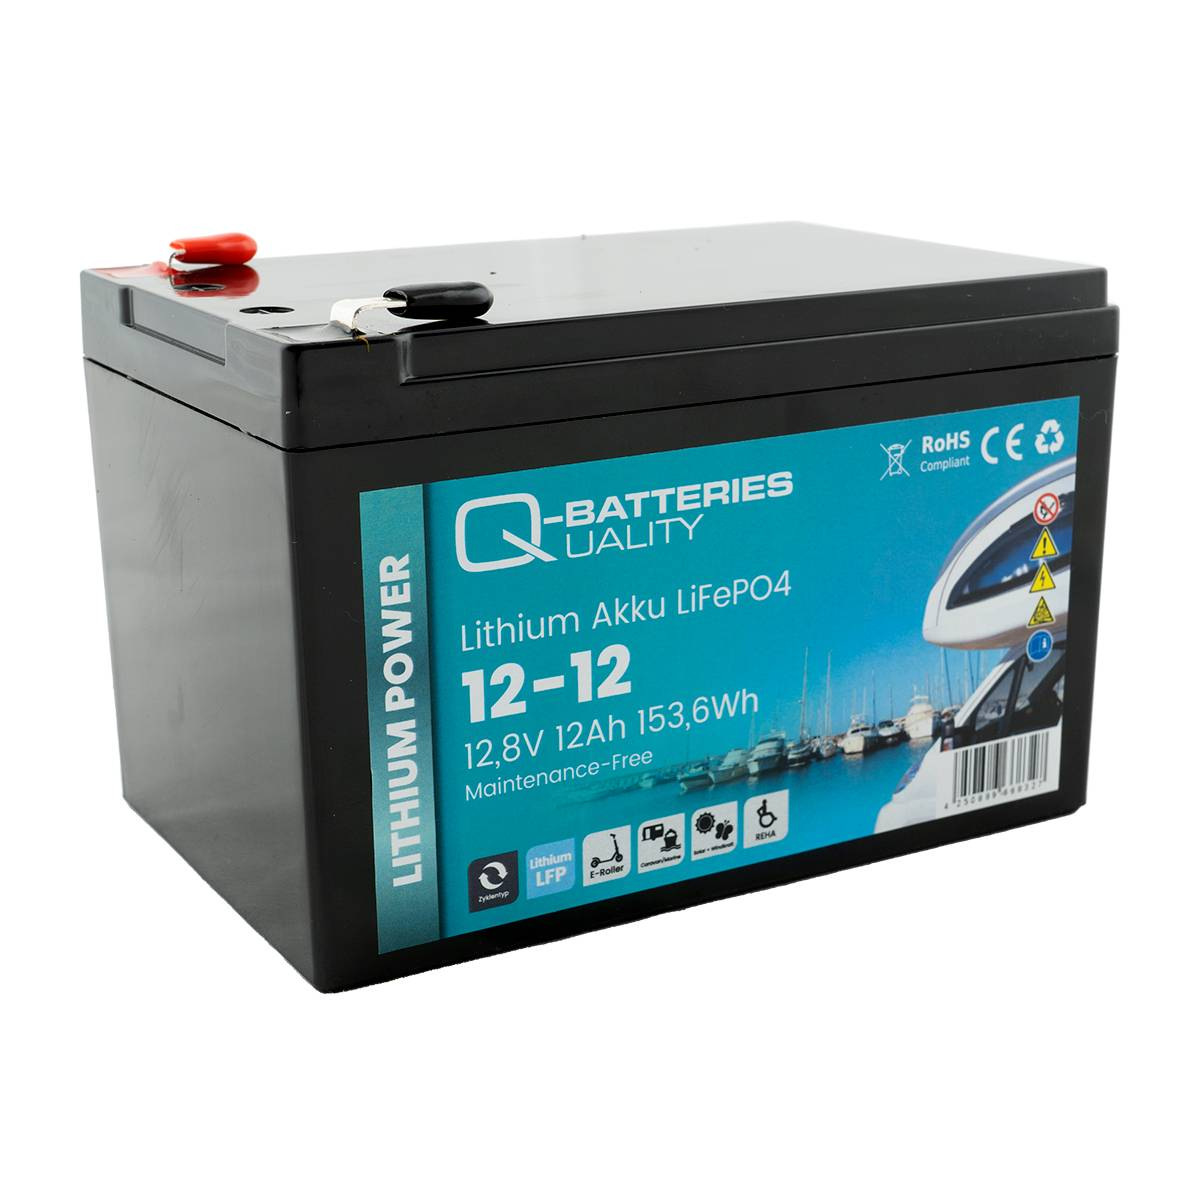 Q-Batteries Lithium Akku 12-12 12,8V 12Ah 153,6Wh LiFePO4 Lithium